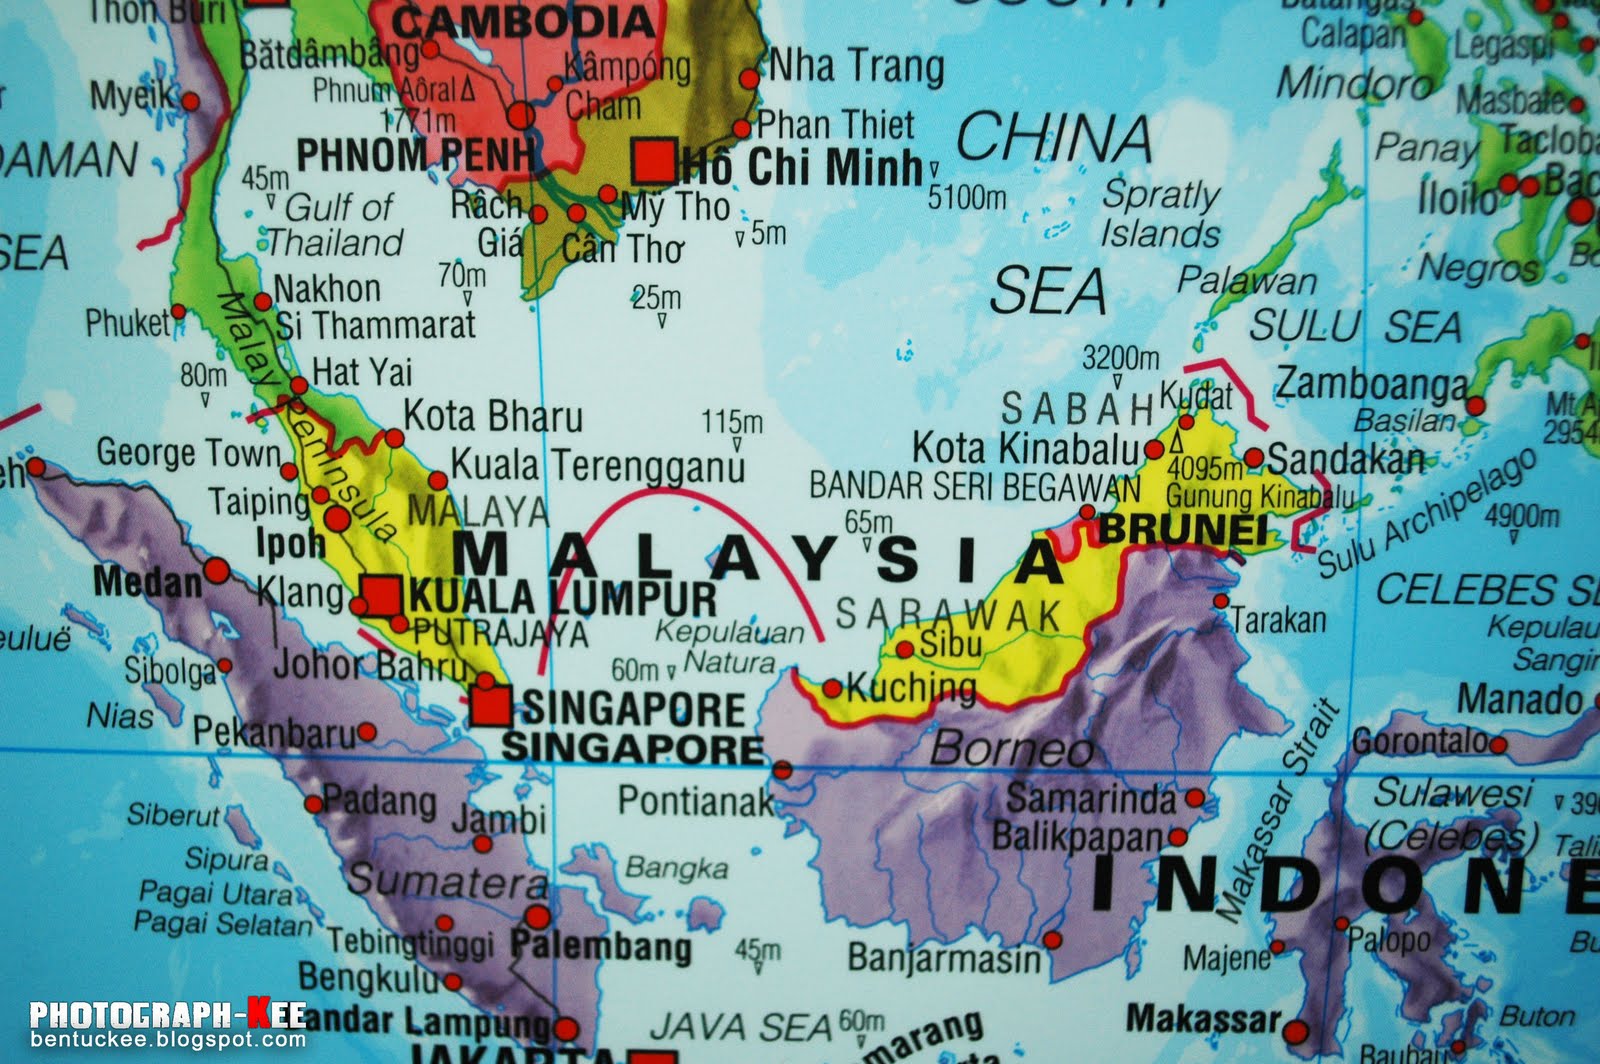 Hãy khám phá lịch sử phong phú và những câu chuyện thú vị về đất nước Malaysia thông qua bản đồ năm